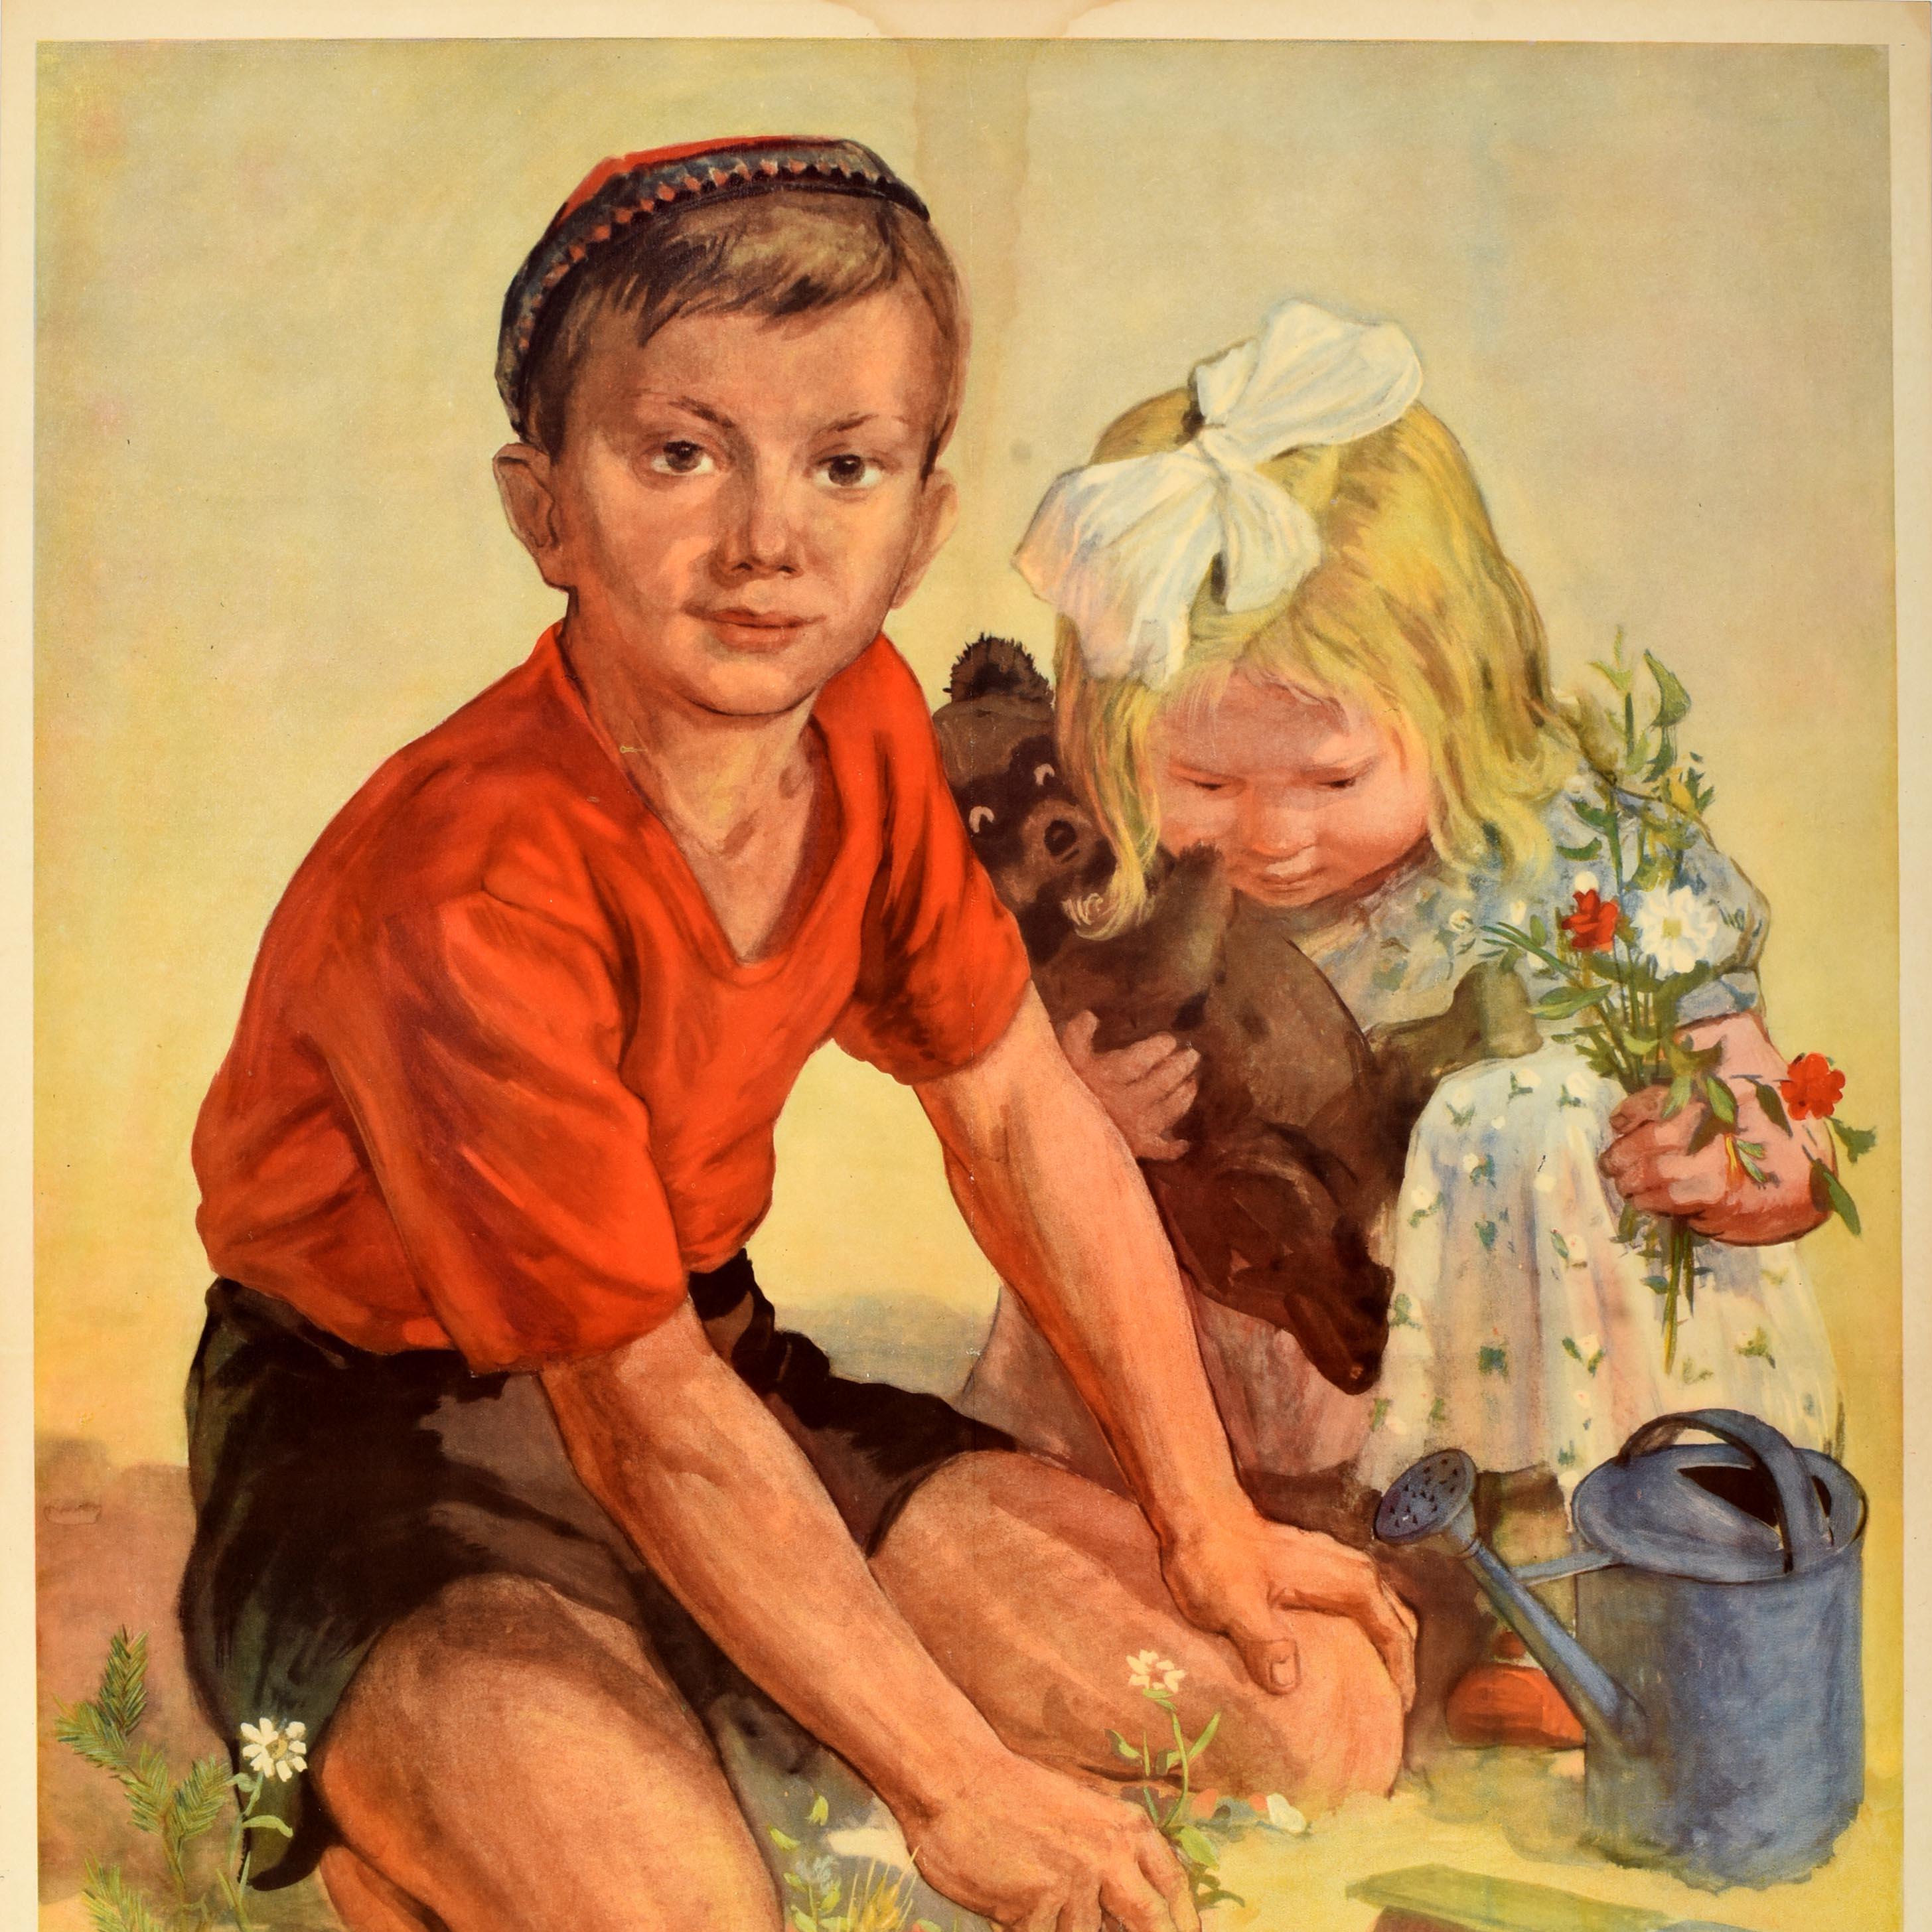 Affiche de propagande soviétique vintage - Paix aux enfants ! / Мир детям ! - représentant une peinture d'un jeune garçon regardant le spectateur tout en cueillant une marguerite à côté d'un arrosoir avec une jeune fille à côté de lui tenant un ours